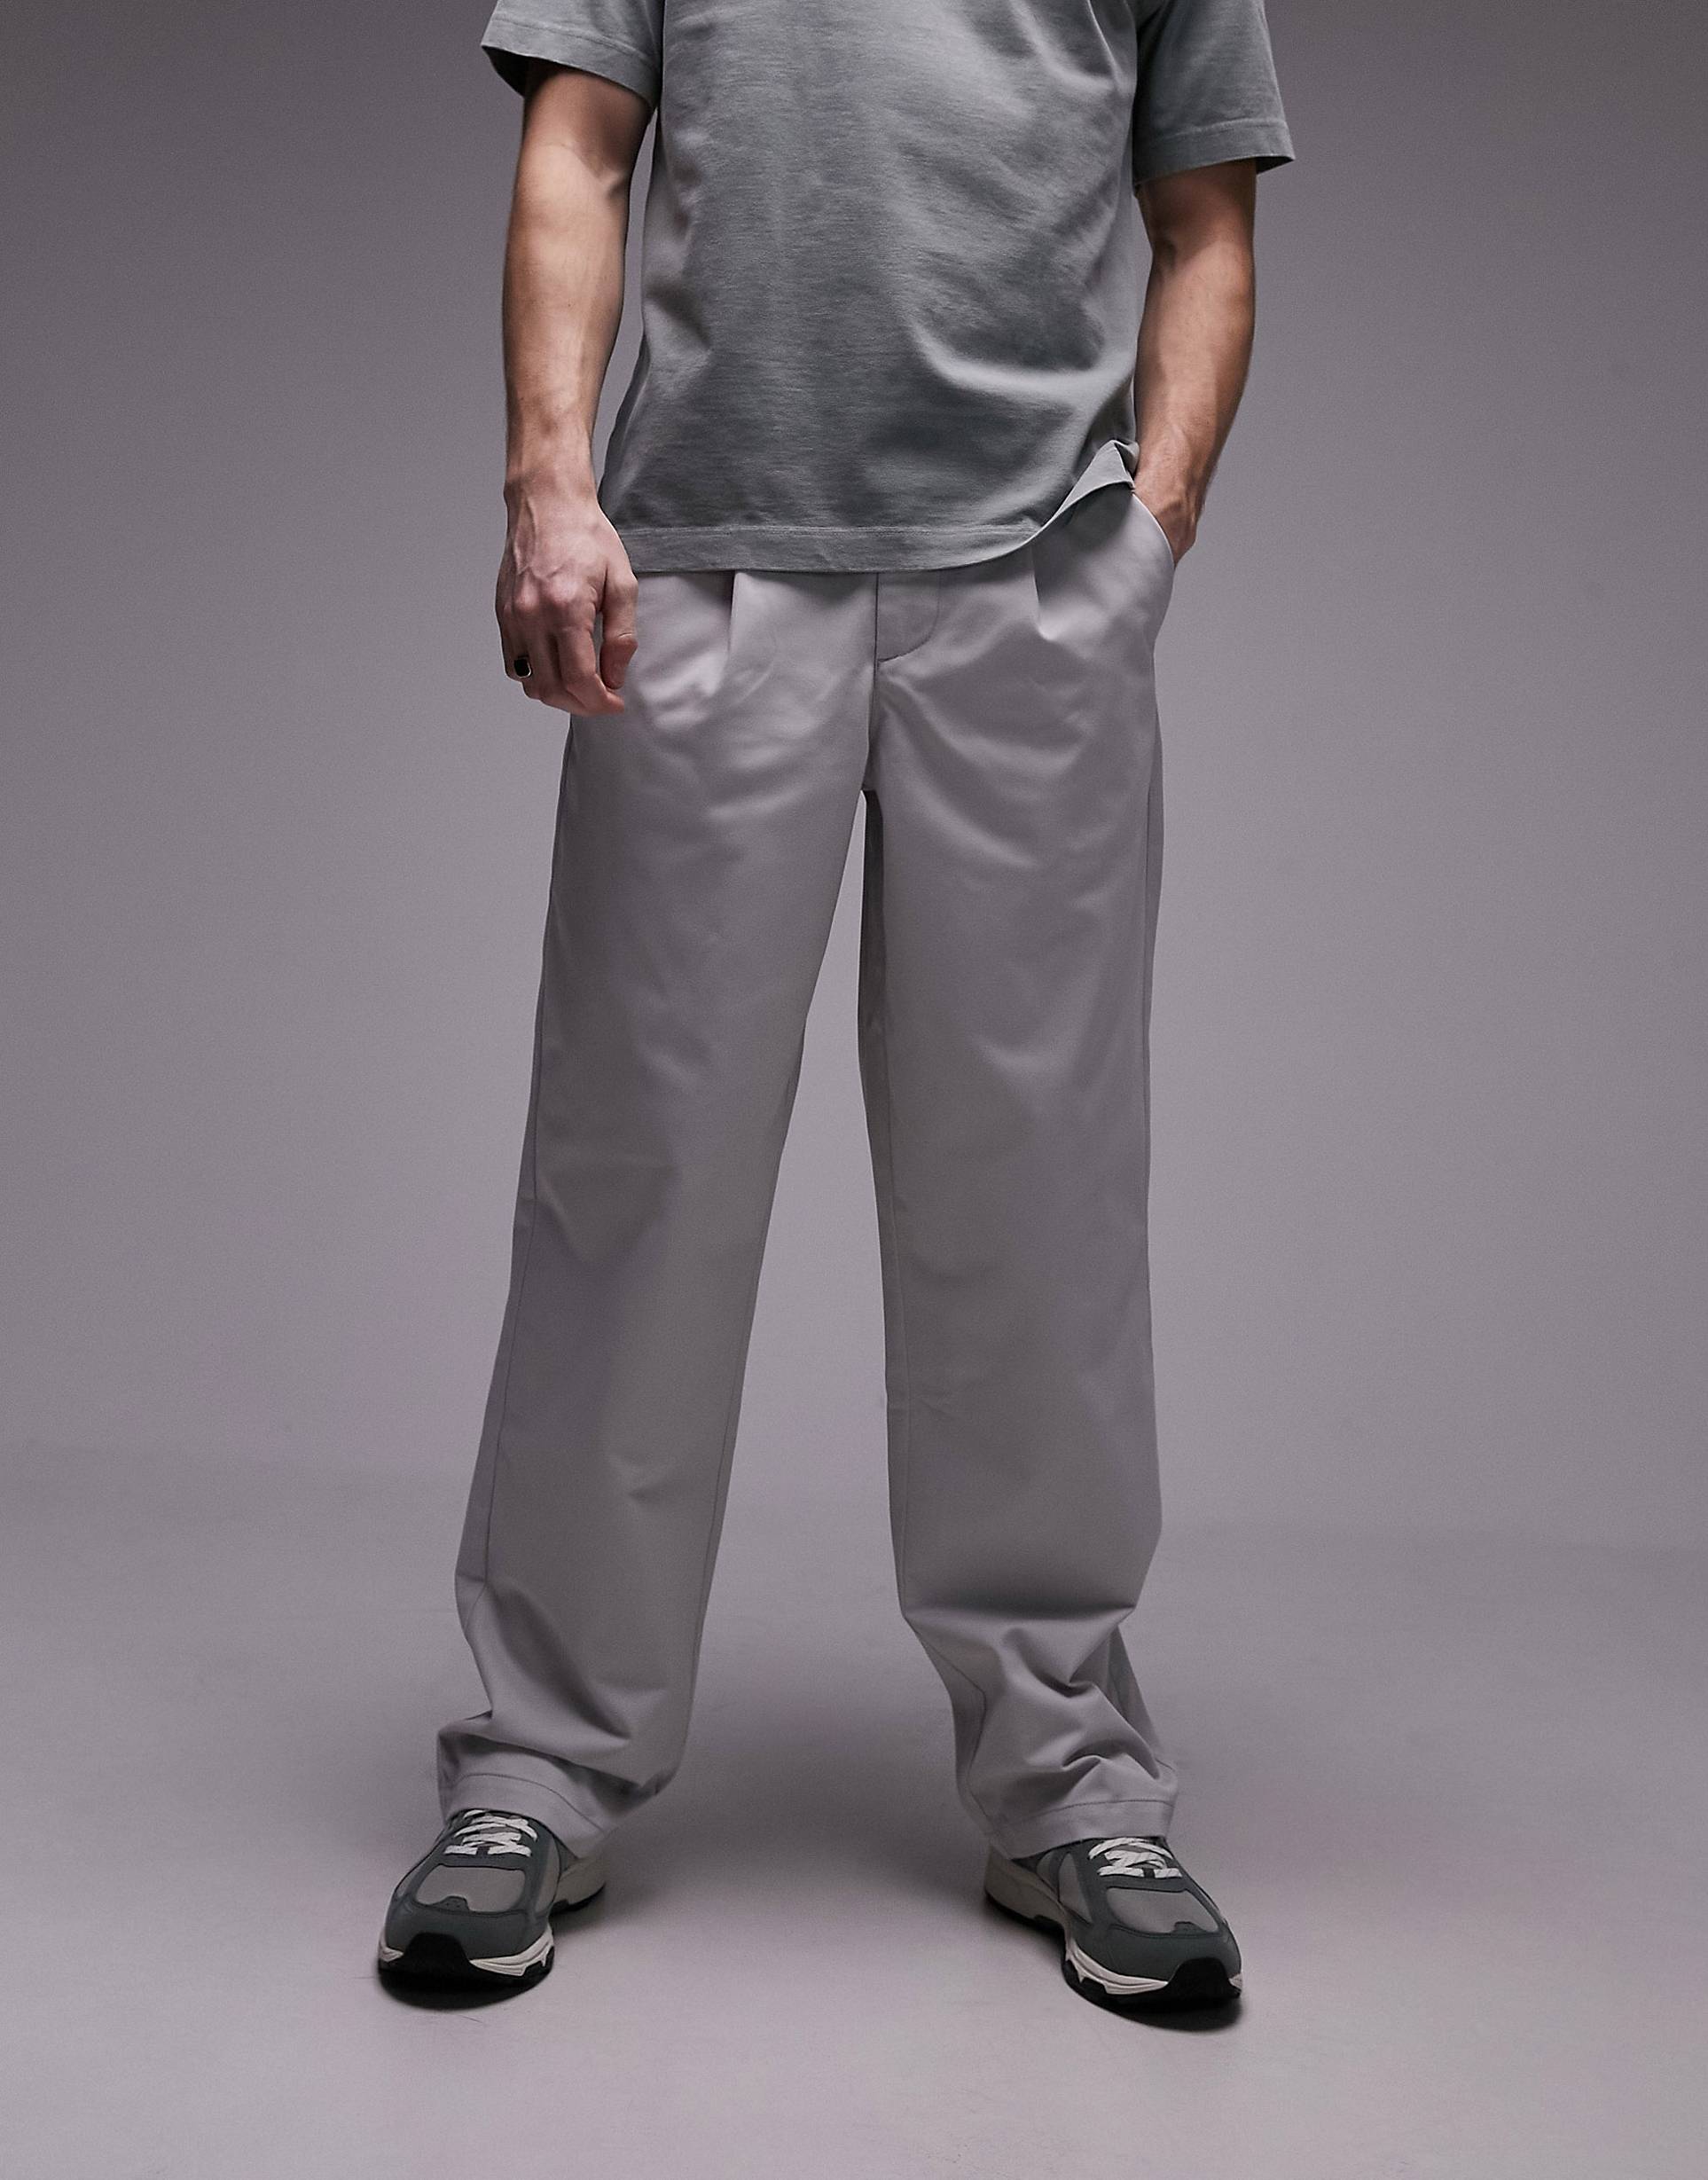 Брюки Topman With Pleats, серый черные широкие брюки из искусственной кожи topman